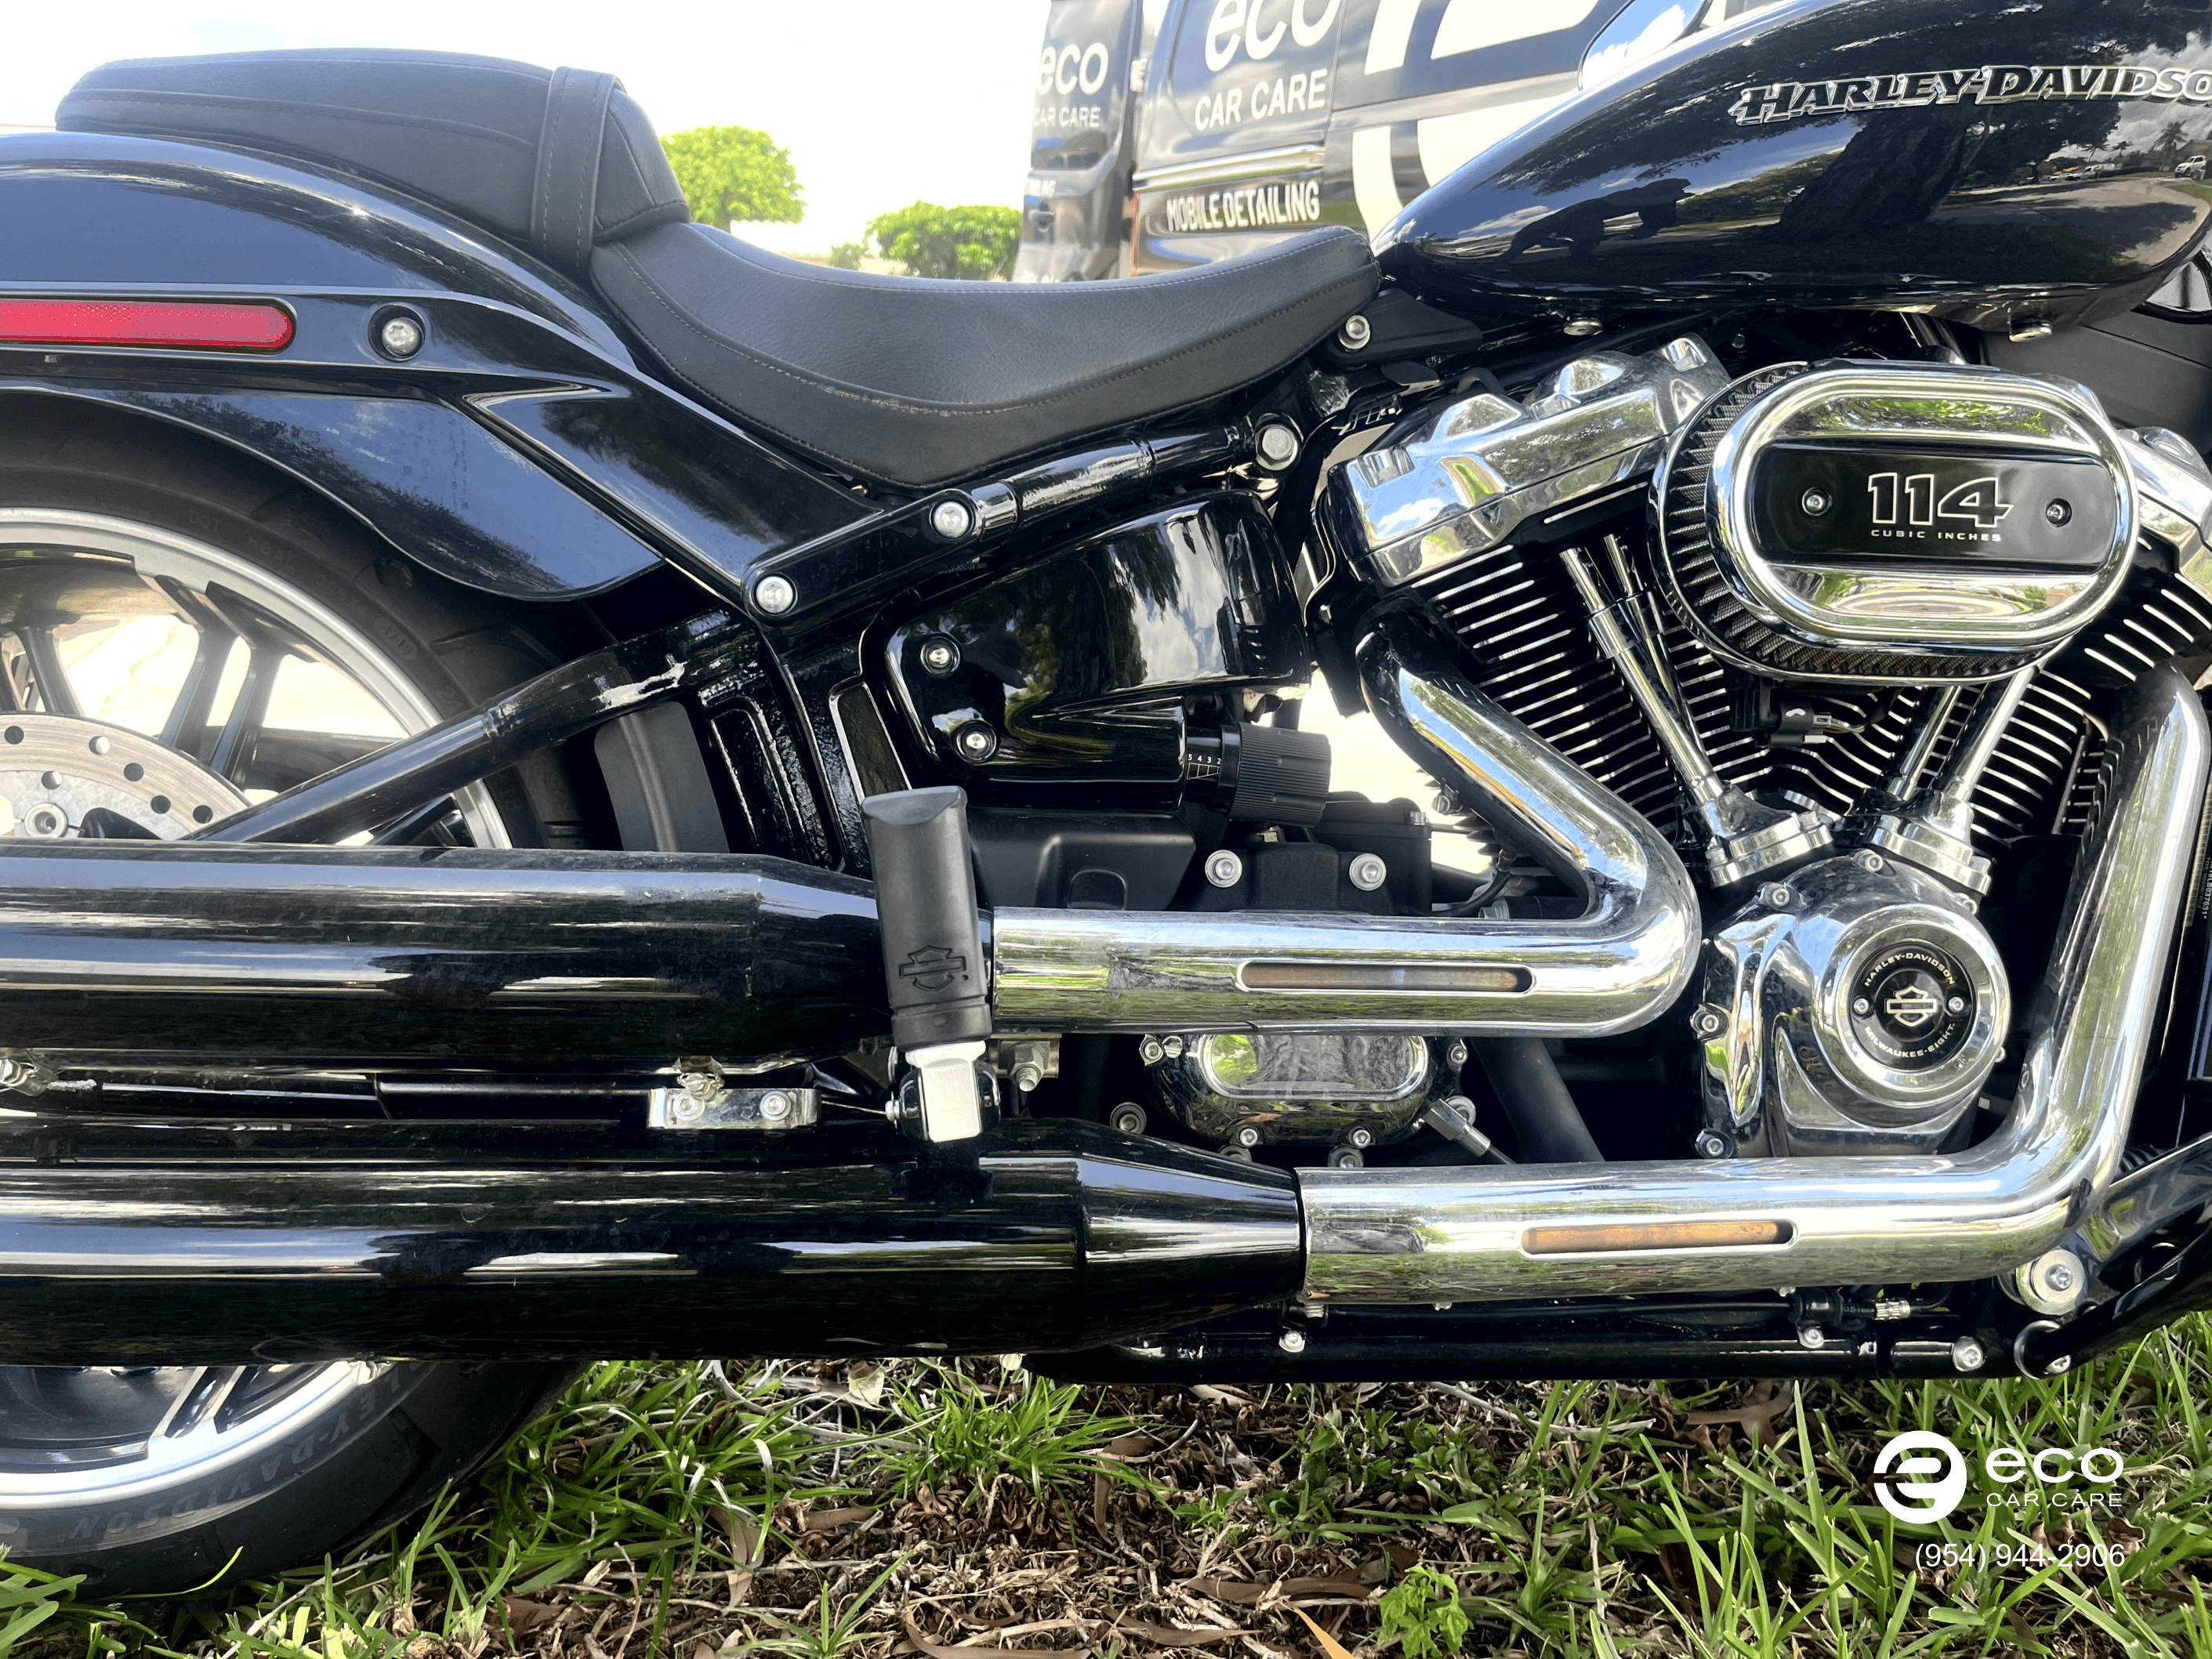 motorcycle chrome polish